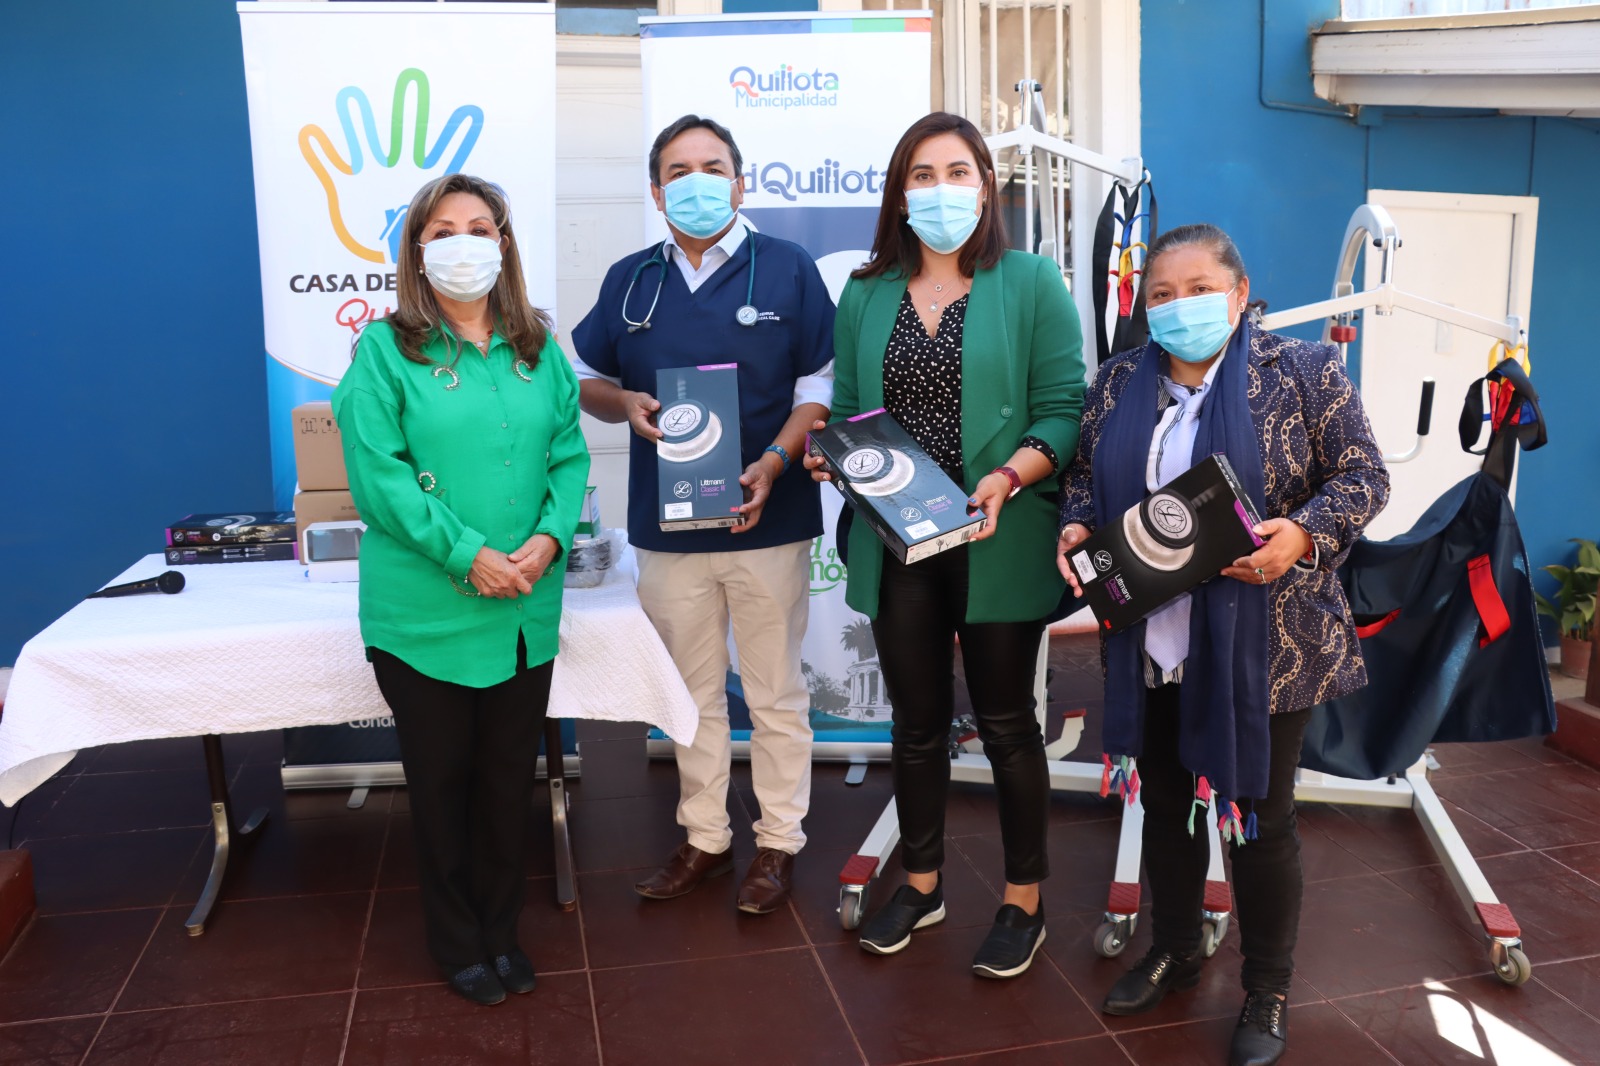 Rotary Club hizo millonaria donación de insumos médicos al municipio de Quillota